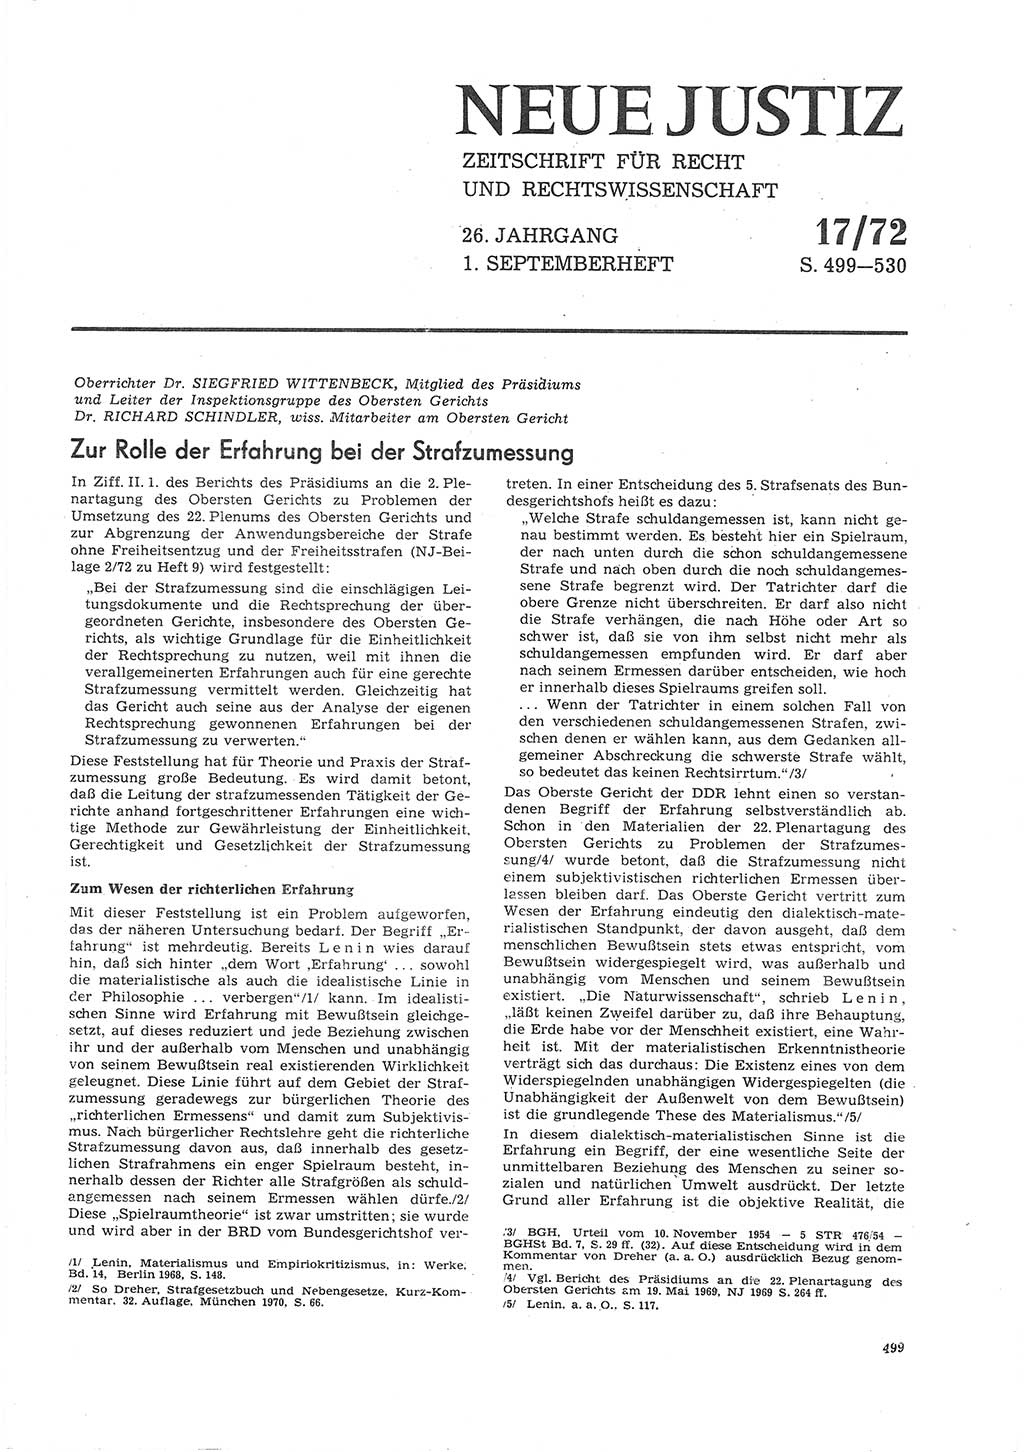 Neue Justiz (NJ), Zeitschrift für Recht und Rechtswissenschaft [Deutsche Demokratische Republik (DDR)], 26. Jahrgang 1972, Seite 499 (NJ DDR 1972, S. 499)